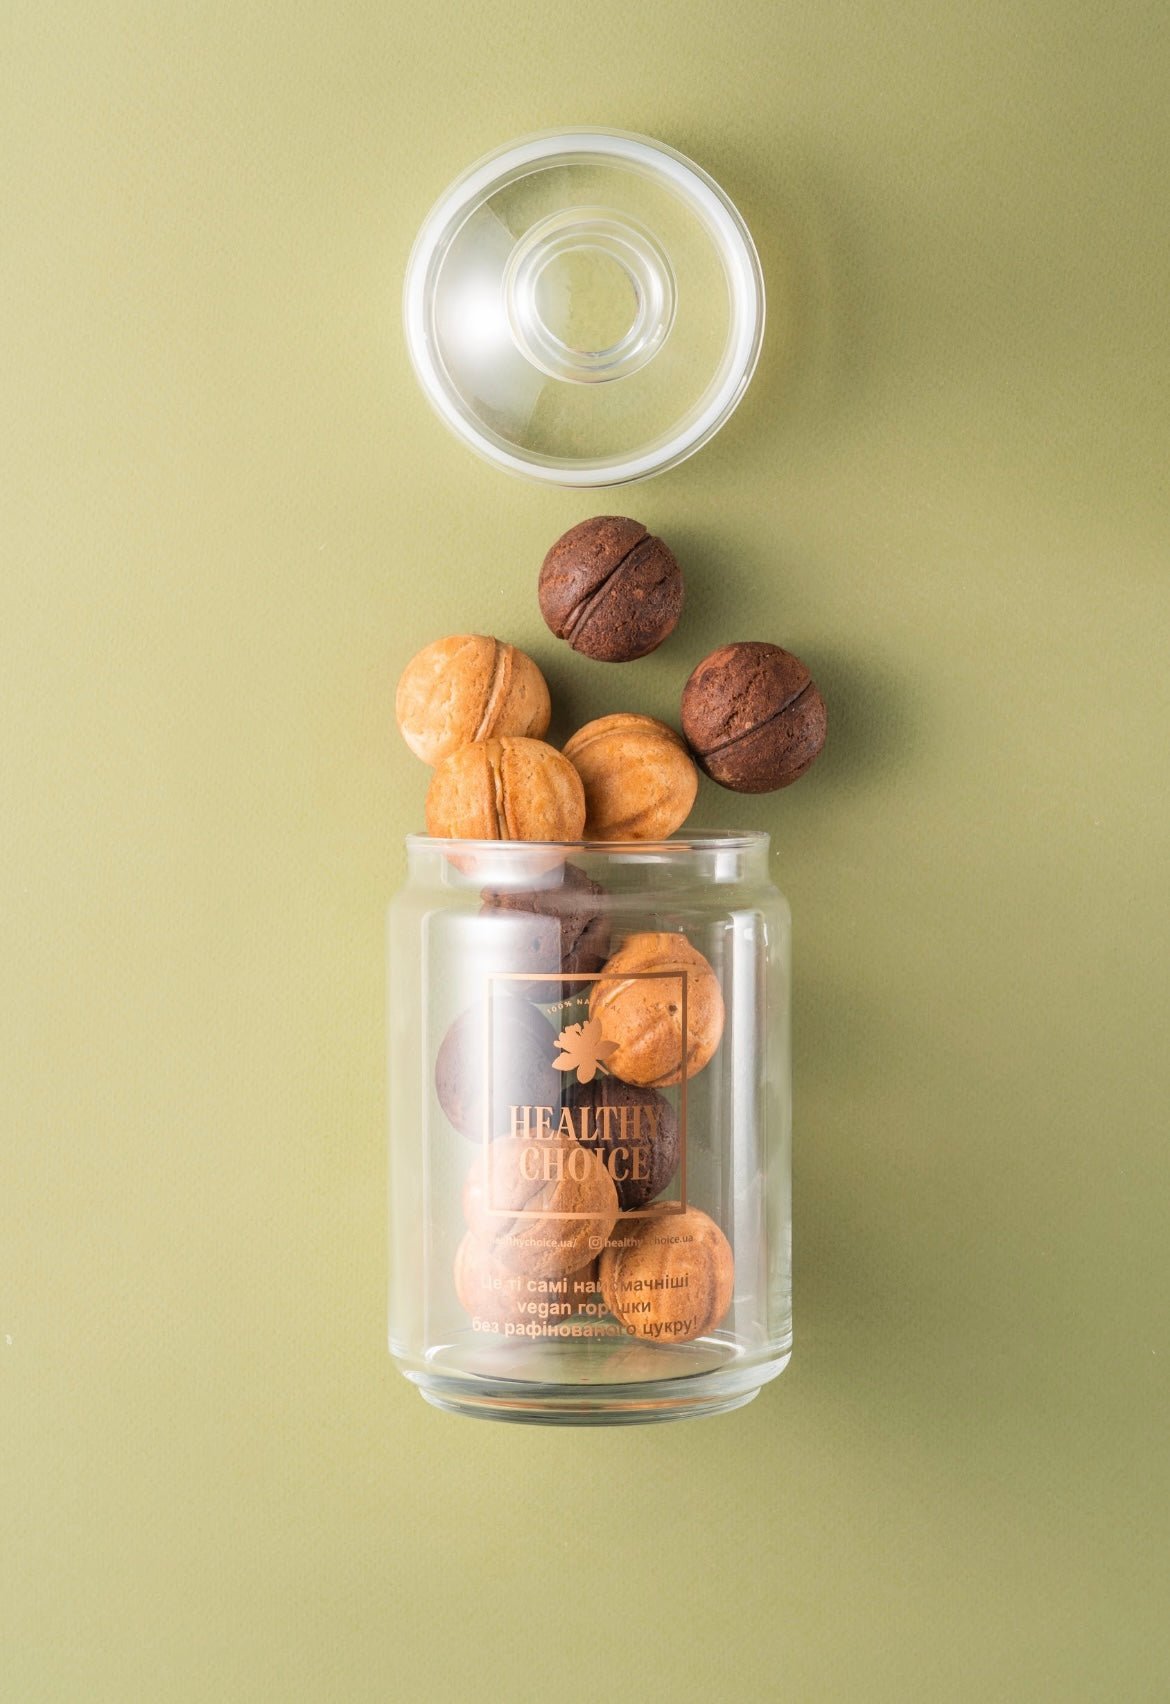 Stuffed Nuts with hazelnuts - Beauty Matters